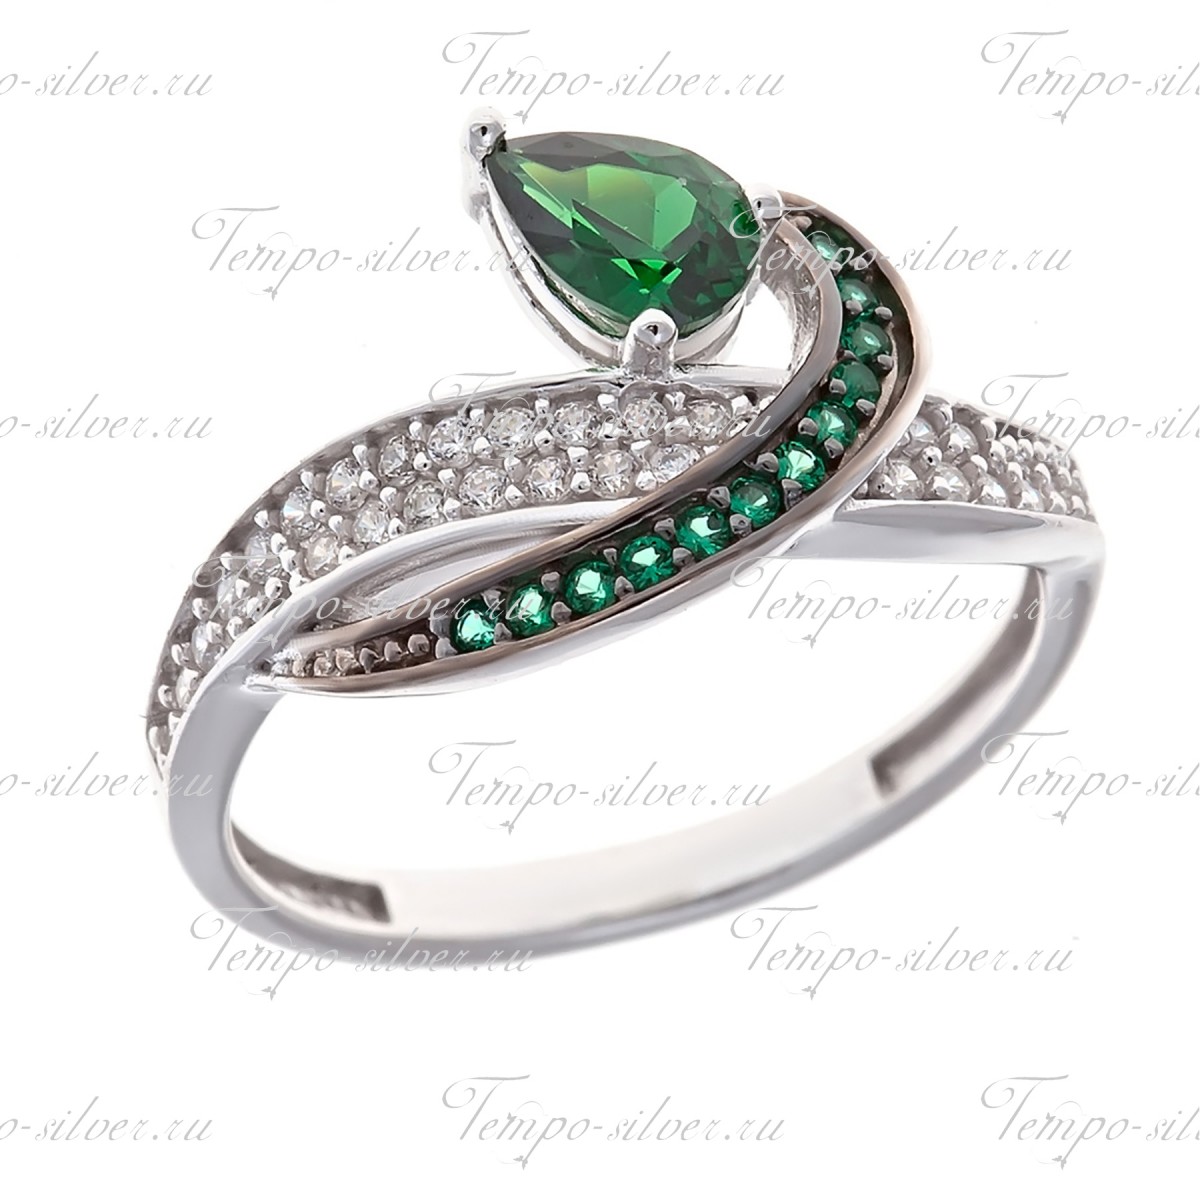 Кольцо из серебра с крупным зеленым камнем и россыпью бело-зеленых цирконий цена